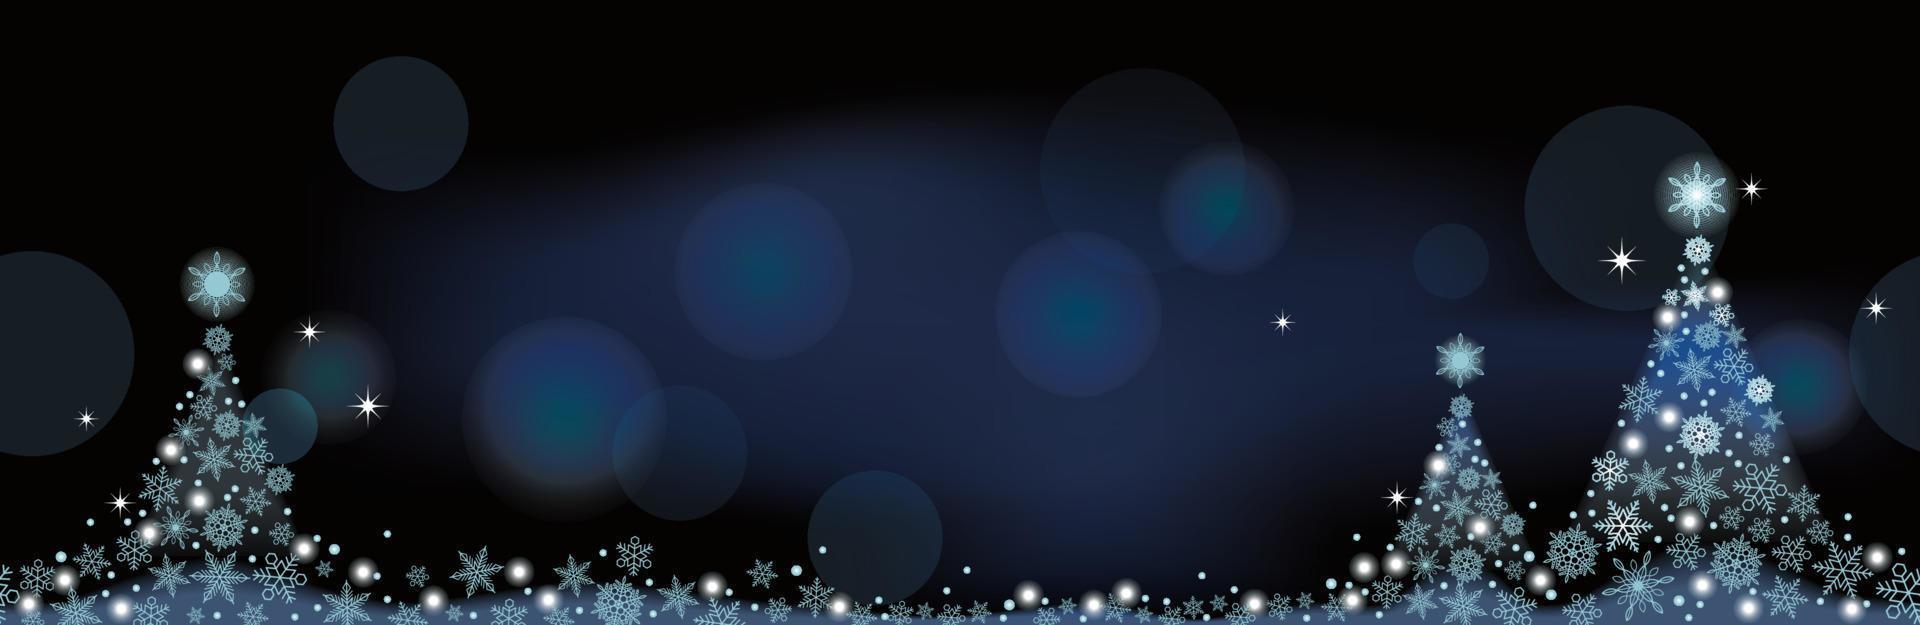 abstracte blauwe winter naadloze vector achtergrond met kerstbomen en tekst ruimte. horizontaal herhaalbaar.